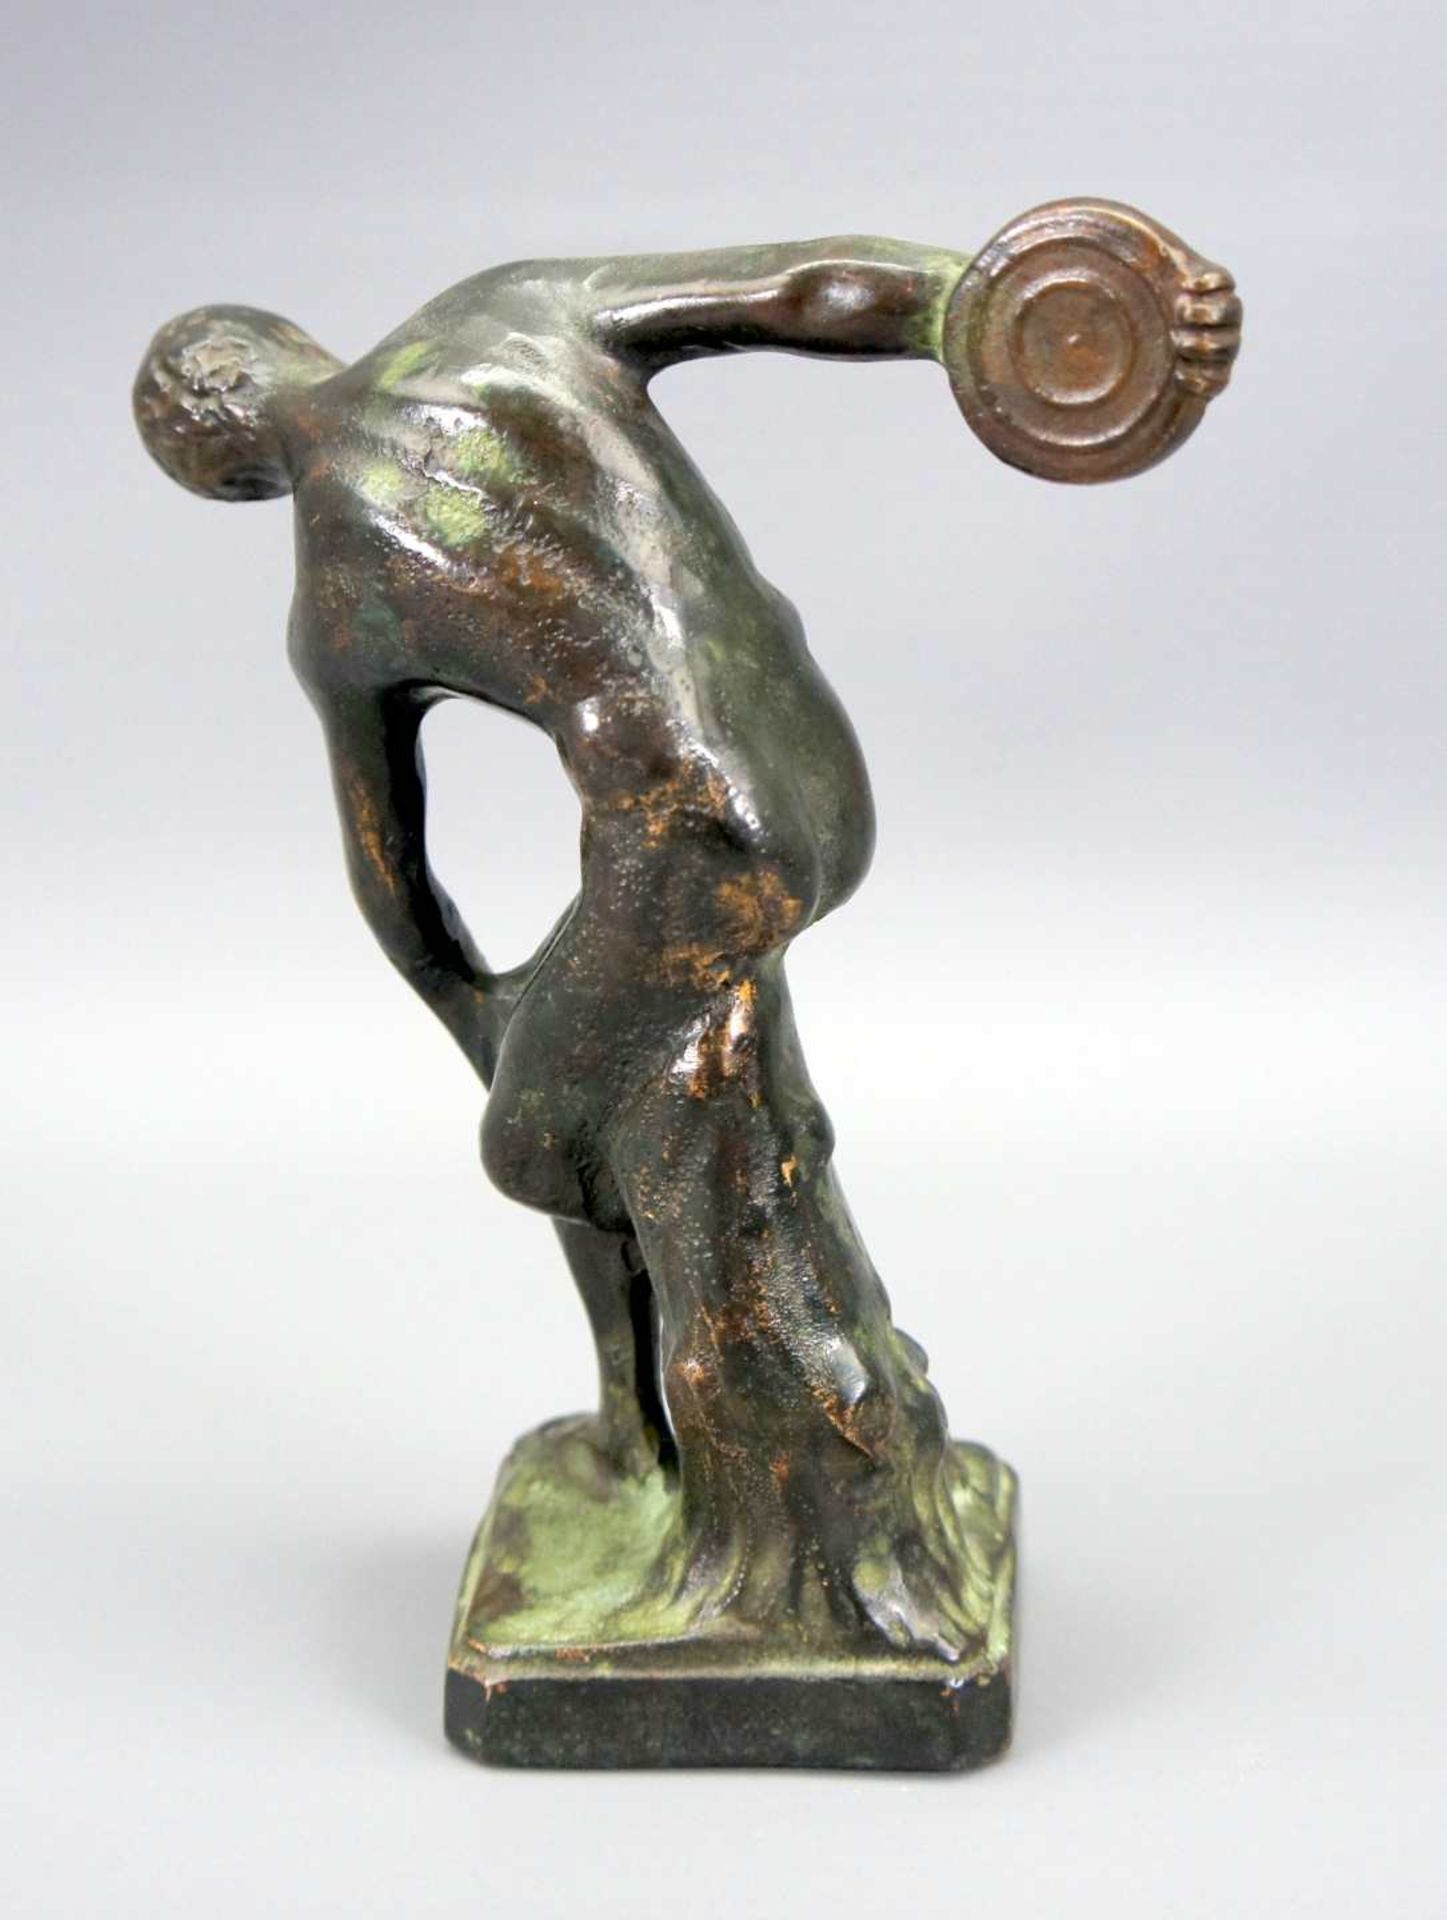 Diskobolos Bronze, goldbraun und grün patiniert. Nackter Athlet mit Diskus in der Han - Bild 2 aus 3